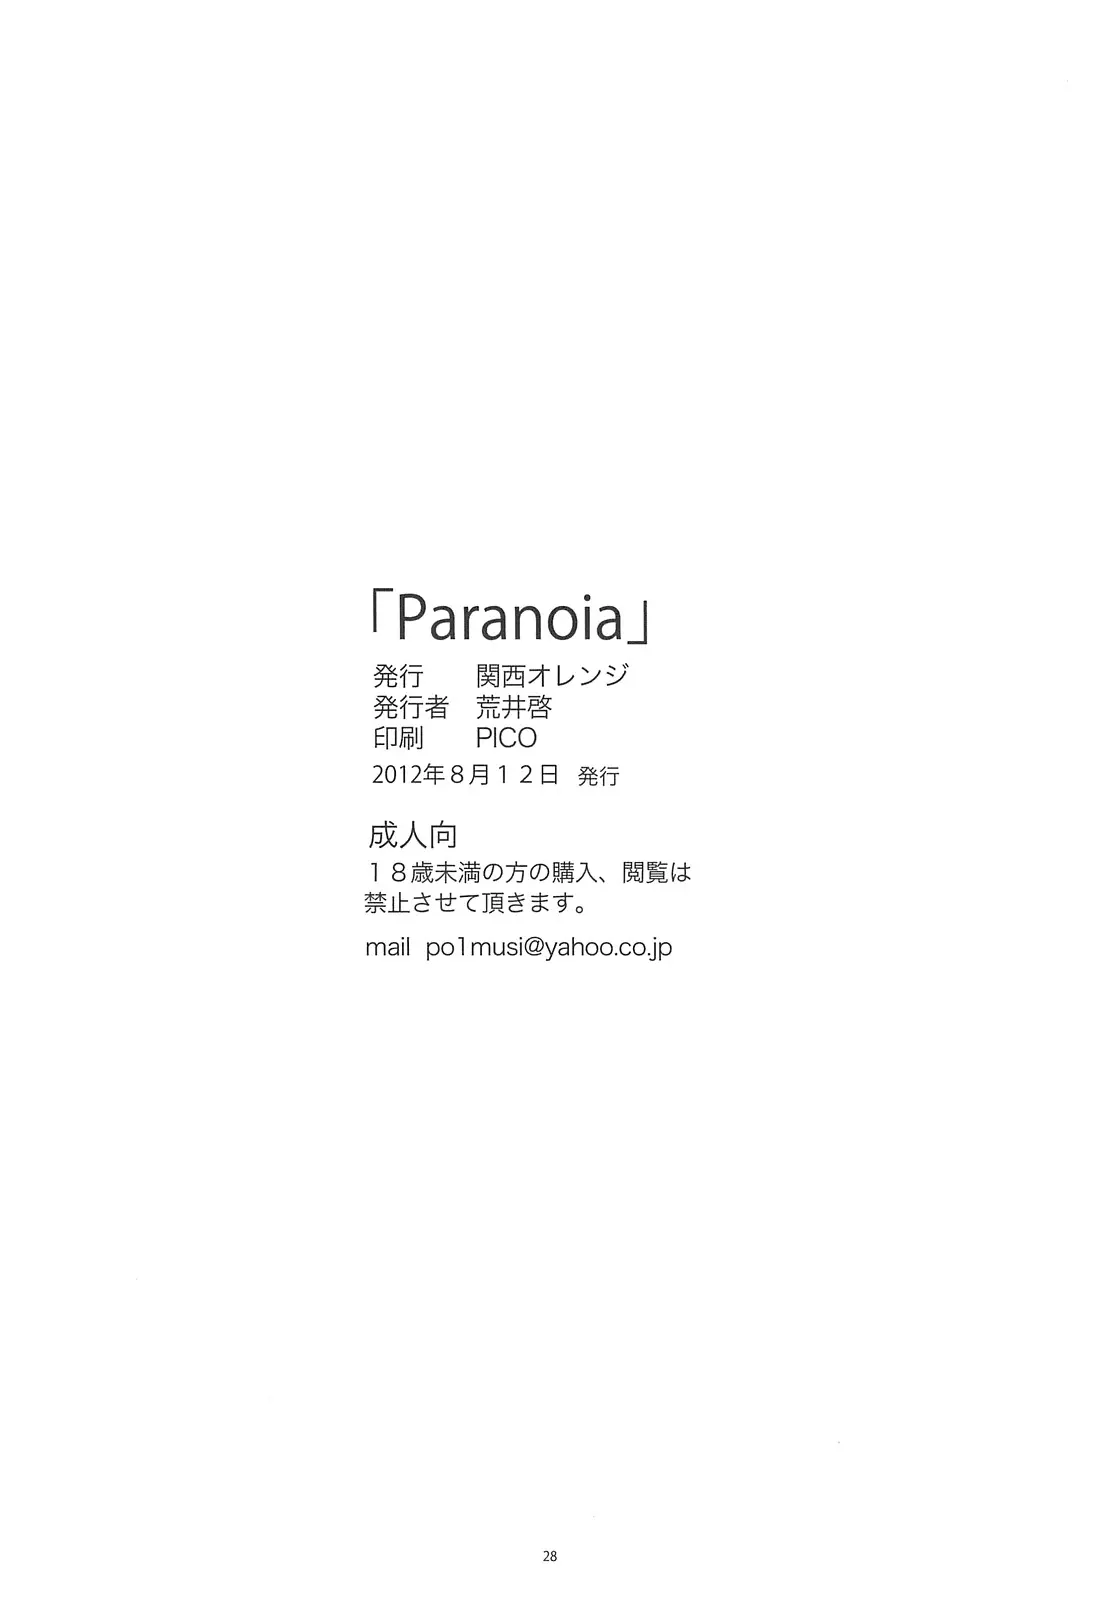 Paranoia - Foto 27